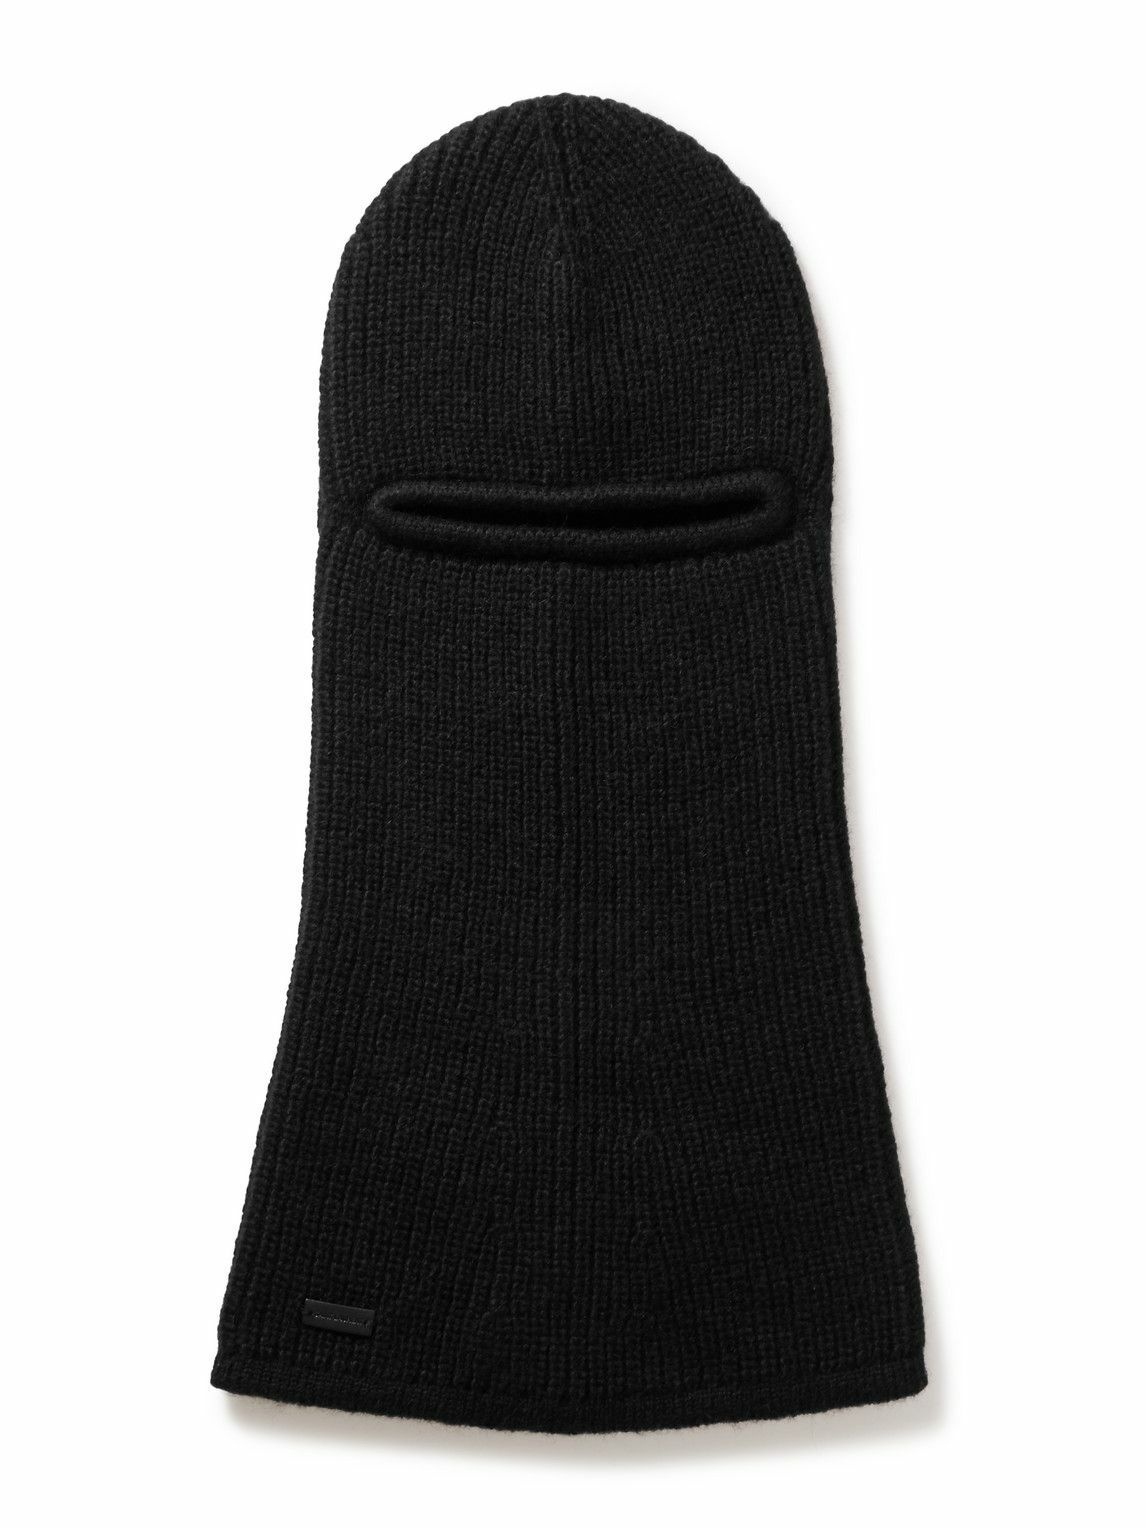 Saint Laurent Cashmere Knit Beanie Black